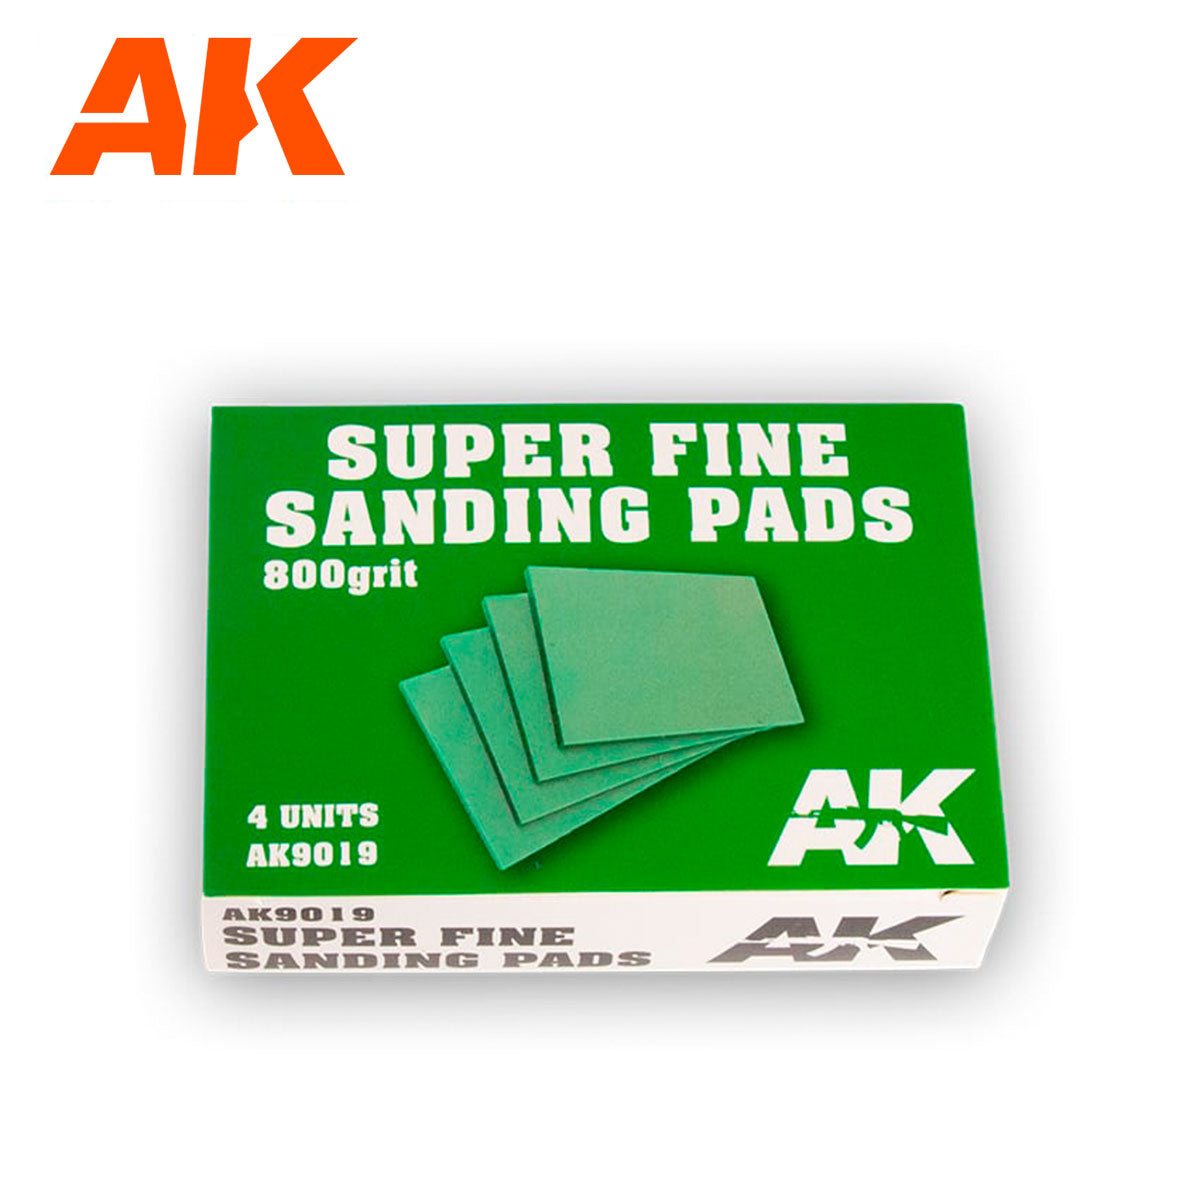 AK9019 - Super Fine Sanding Pads - 800 grit (4 in a pack) Green Box